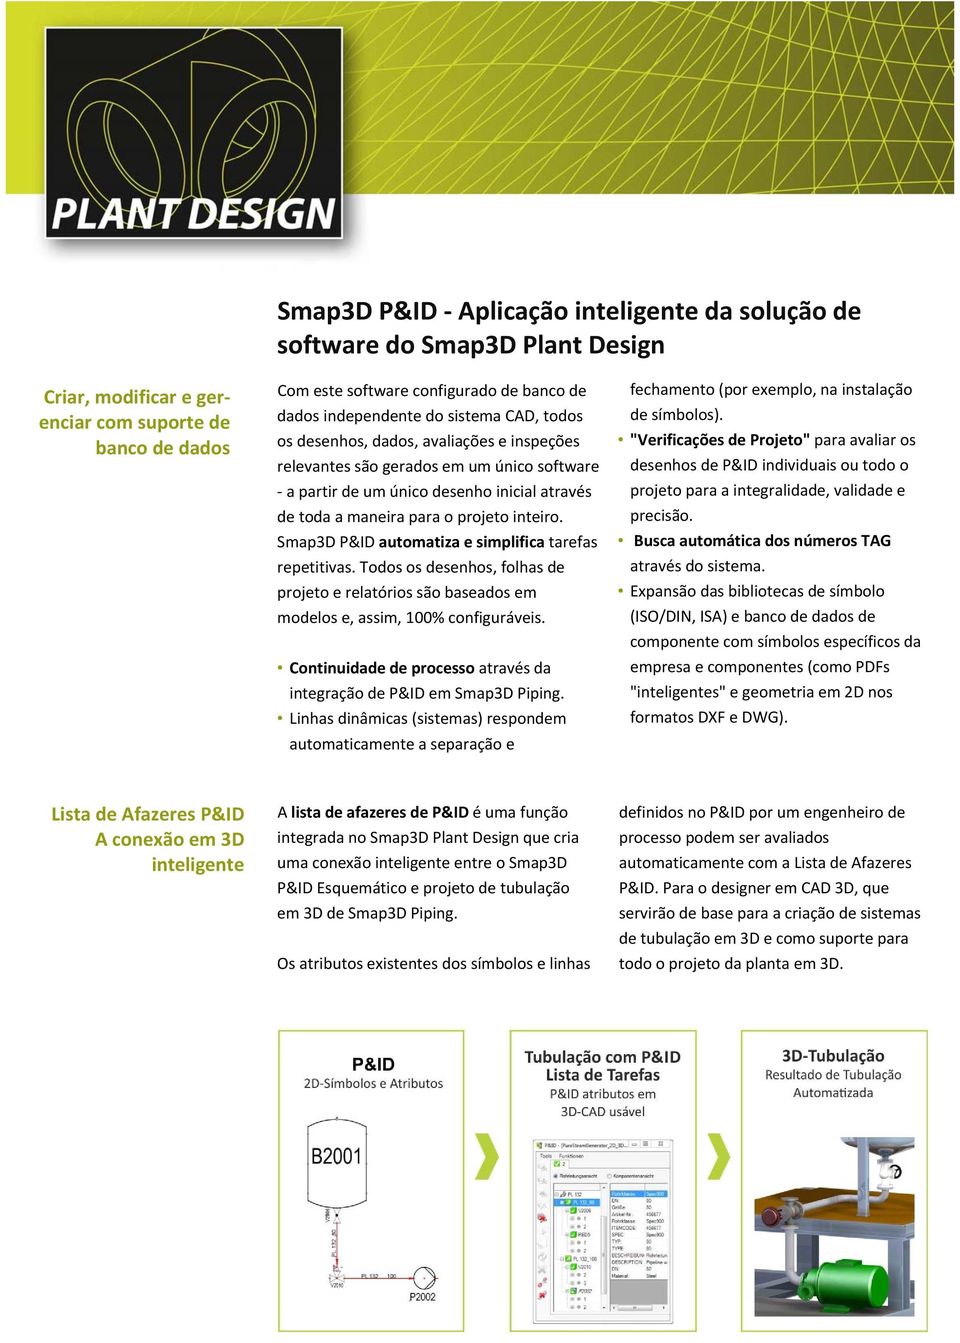 Smap3D P&ID automatiza e simplifica tarefas repetitivas. Todos os desenhos, folhas de projeto e relatórios são baseados em modelos e, assim, 100% configuráveis.